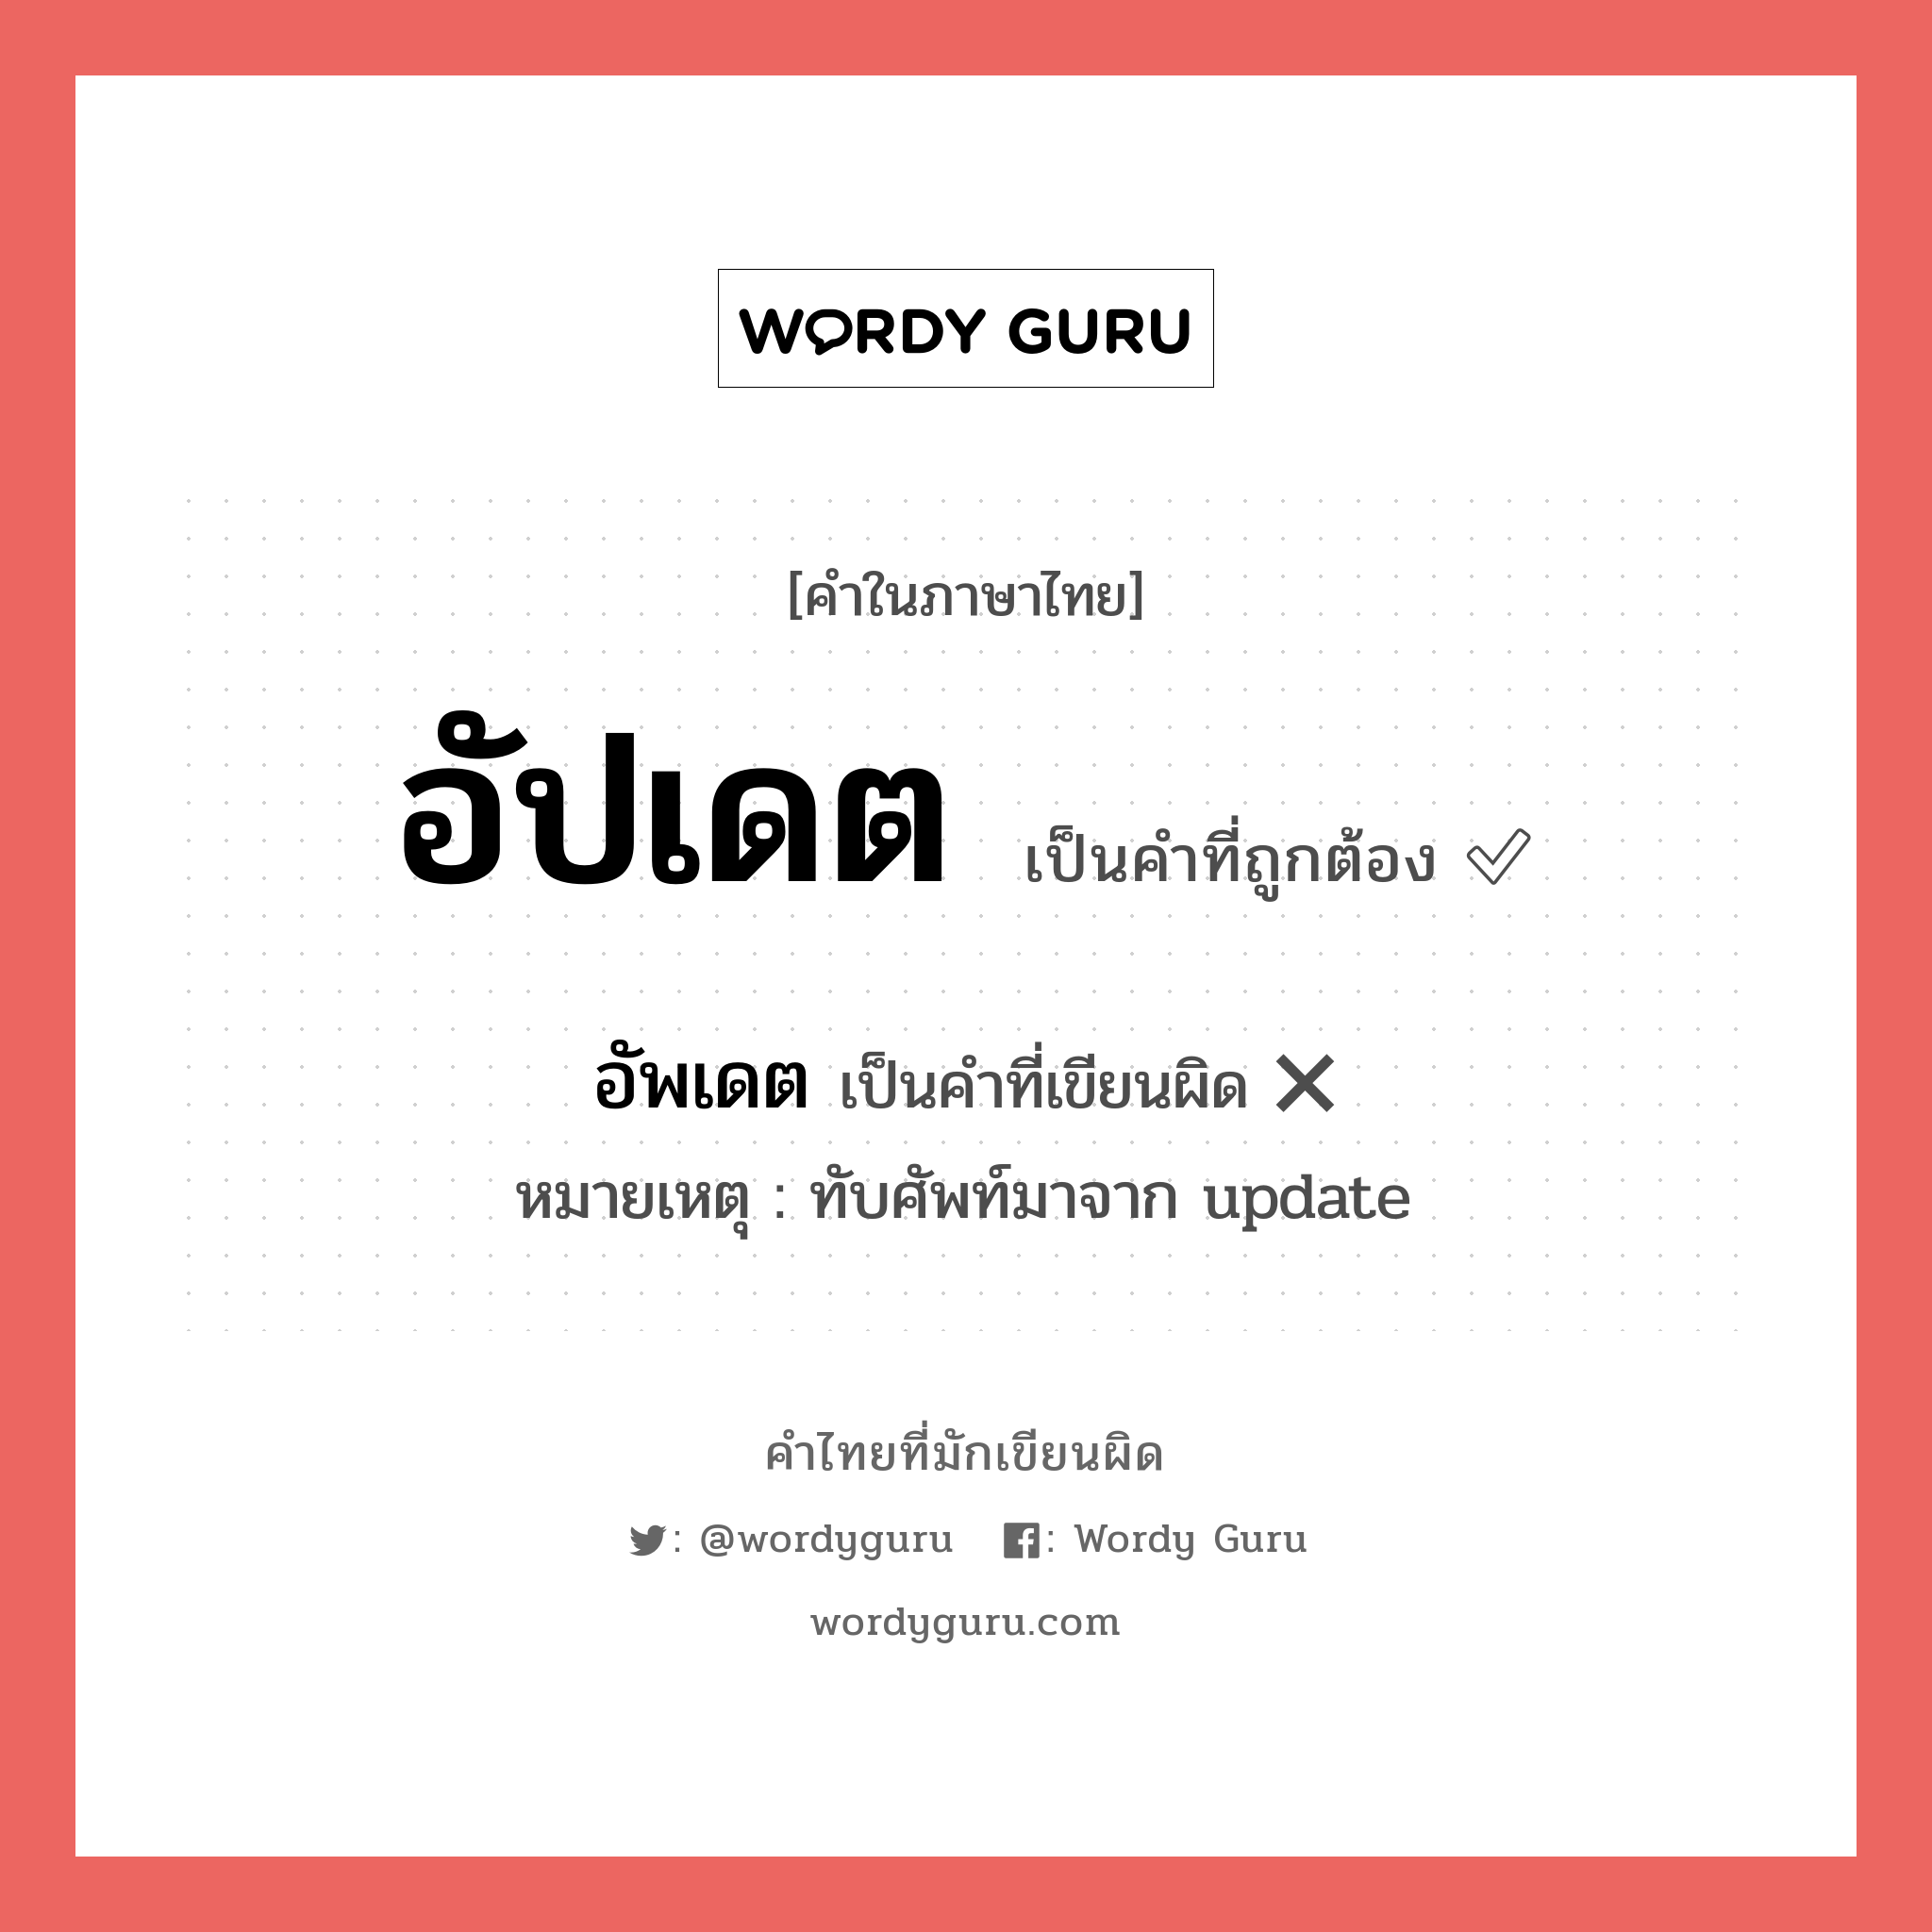 "อัปเดต" กับ "อัพเดท" เขียนอย่างไร คำไหนที่ถูกต้อง - คำไทยที่มักเขียนผิด